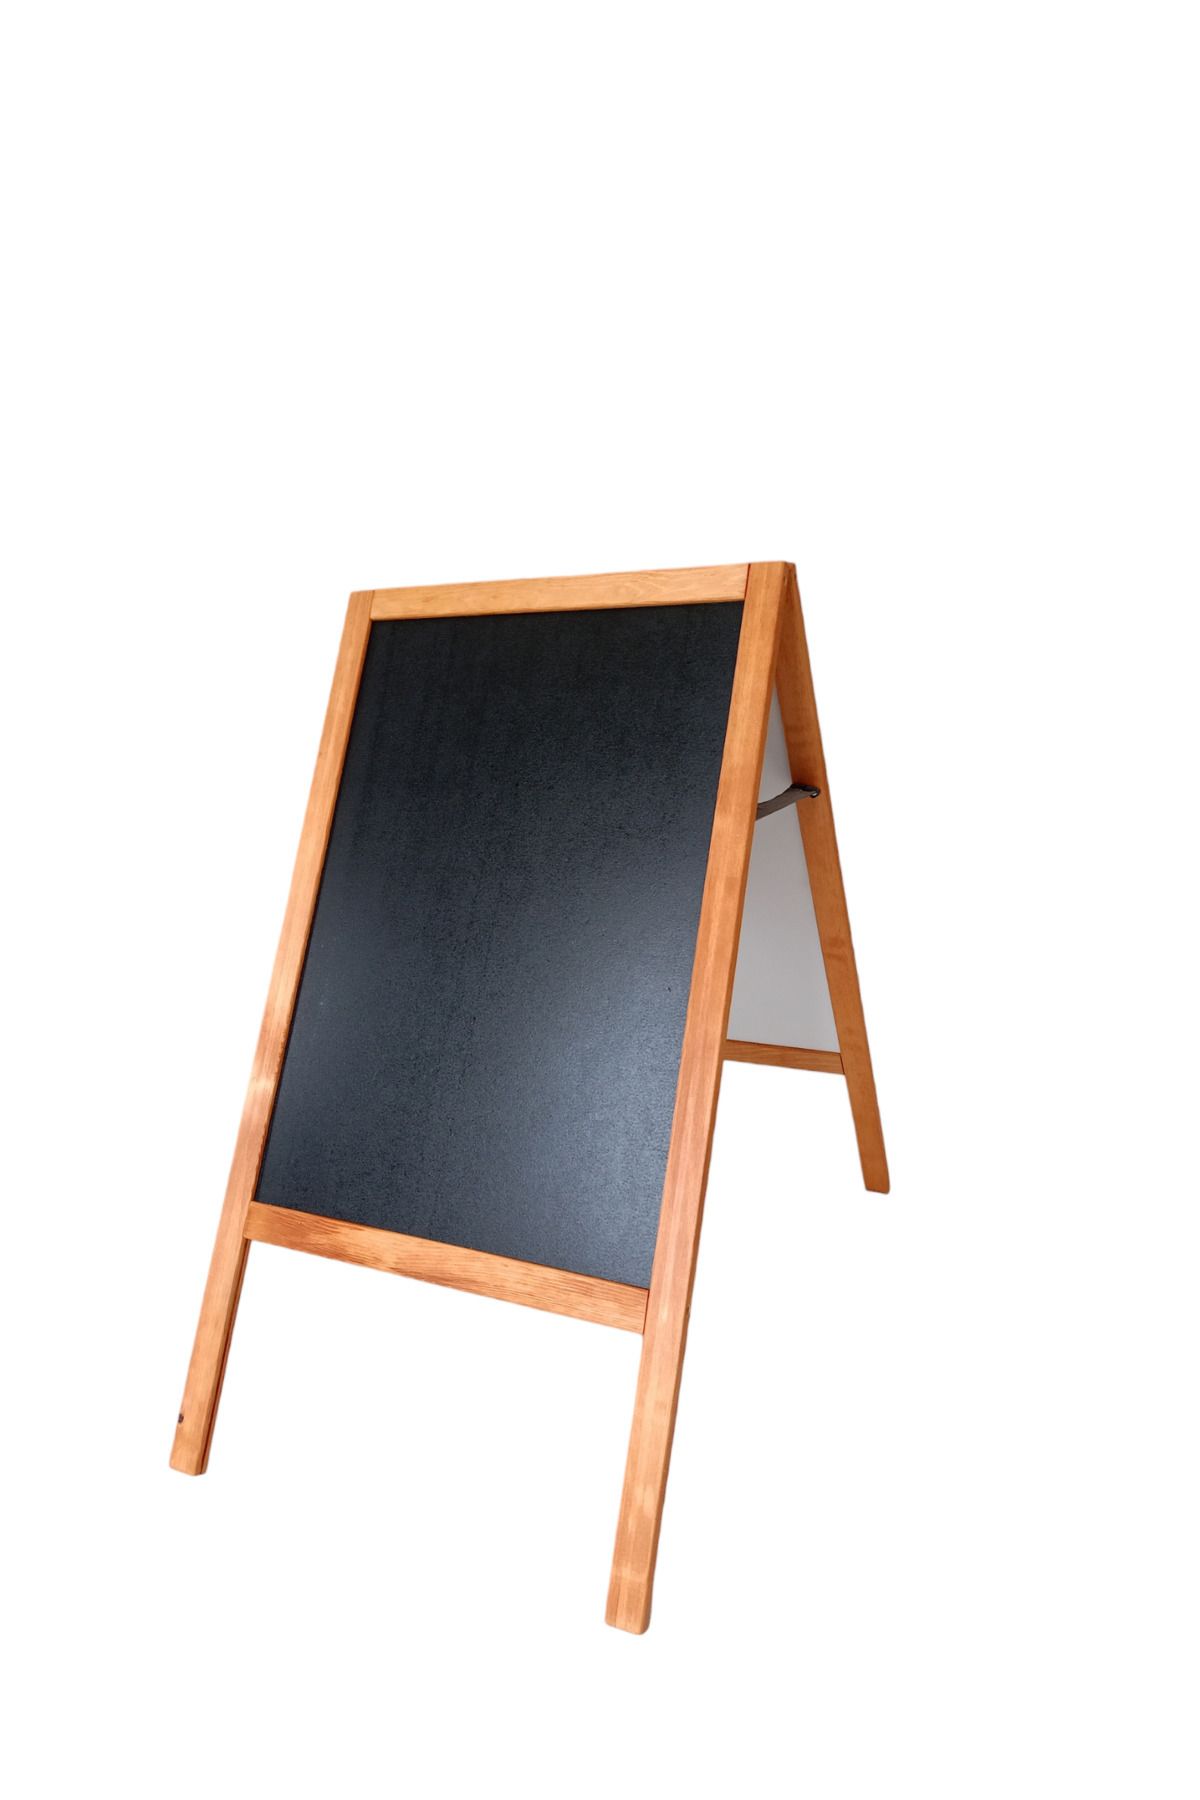 MİRRORSS Menü tahtası ahşap ayaklı çift taraflı  yazı tahtası 95x50